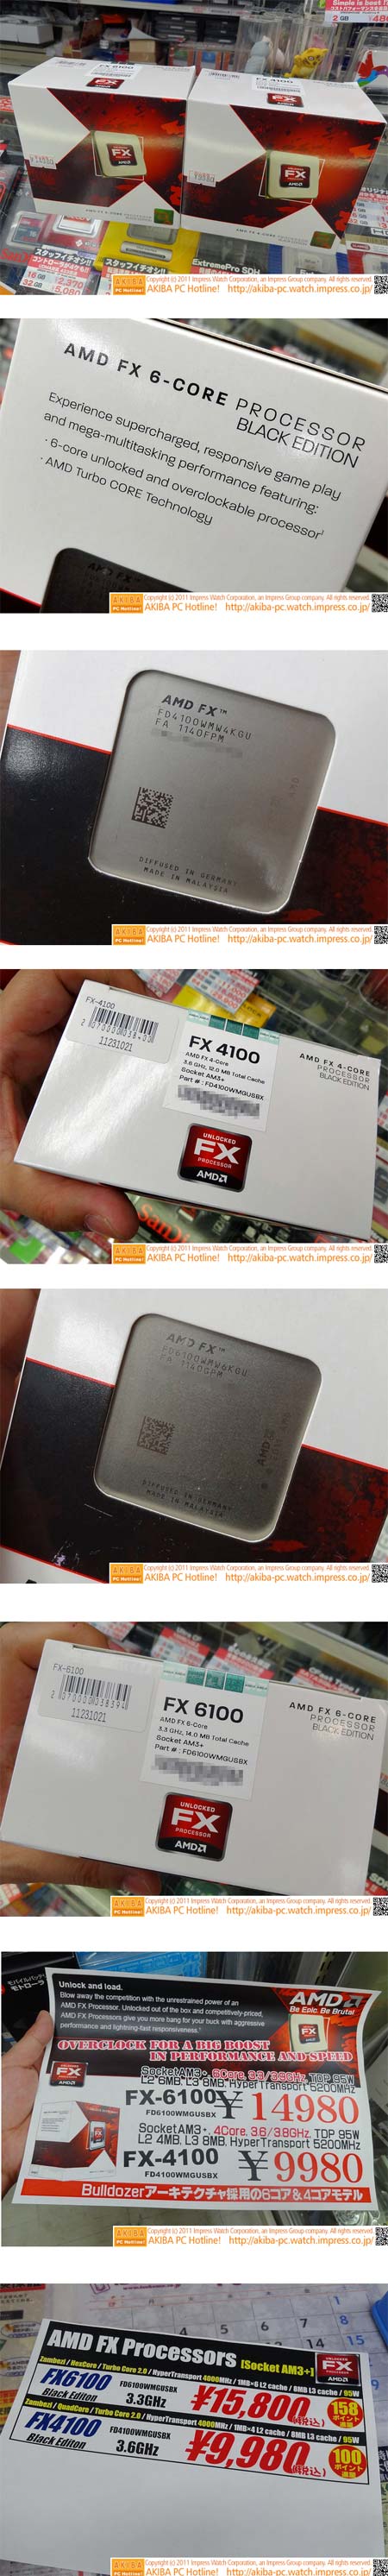 Процессоры AMD FX-6100 и FX-4100